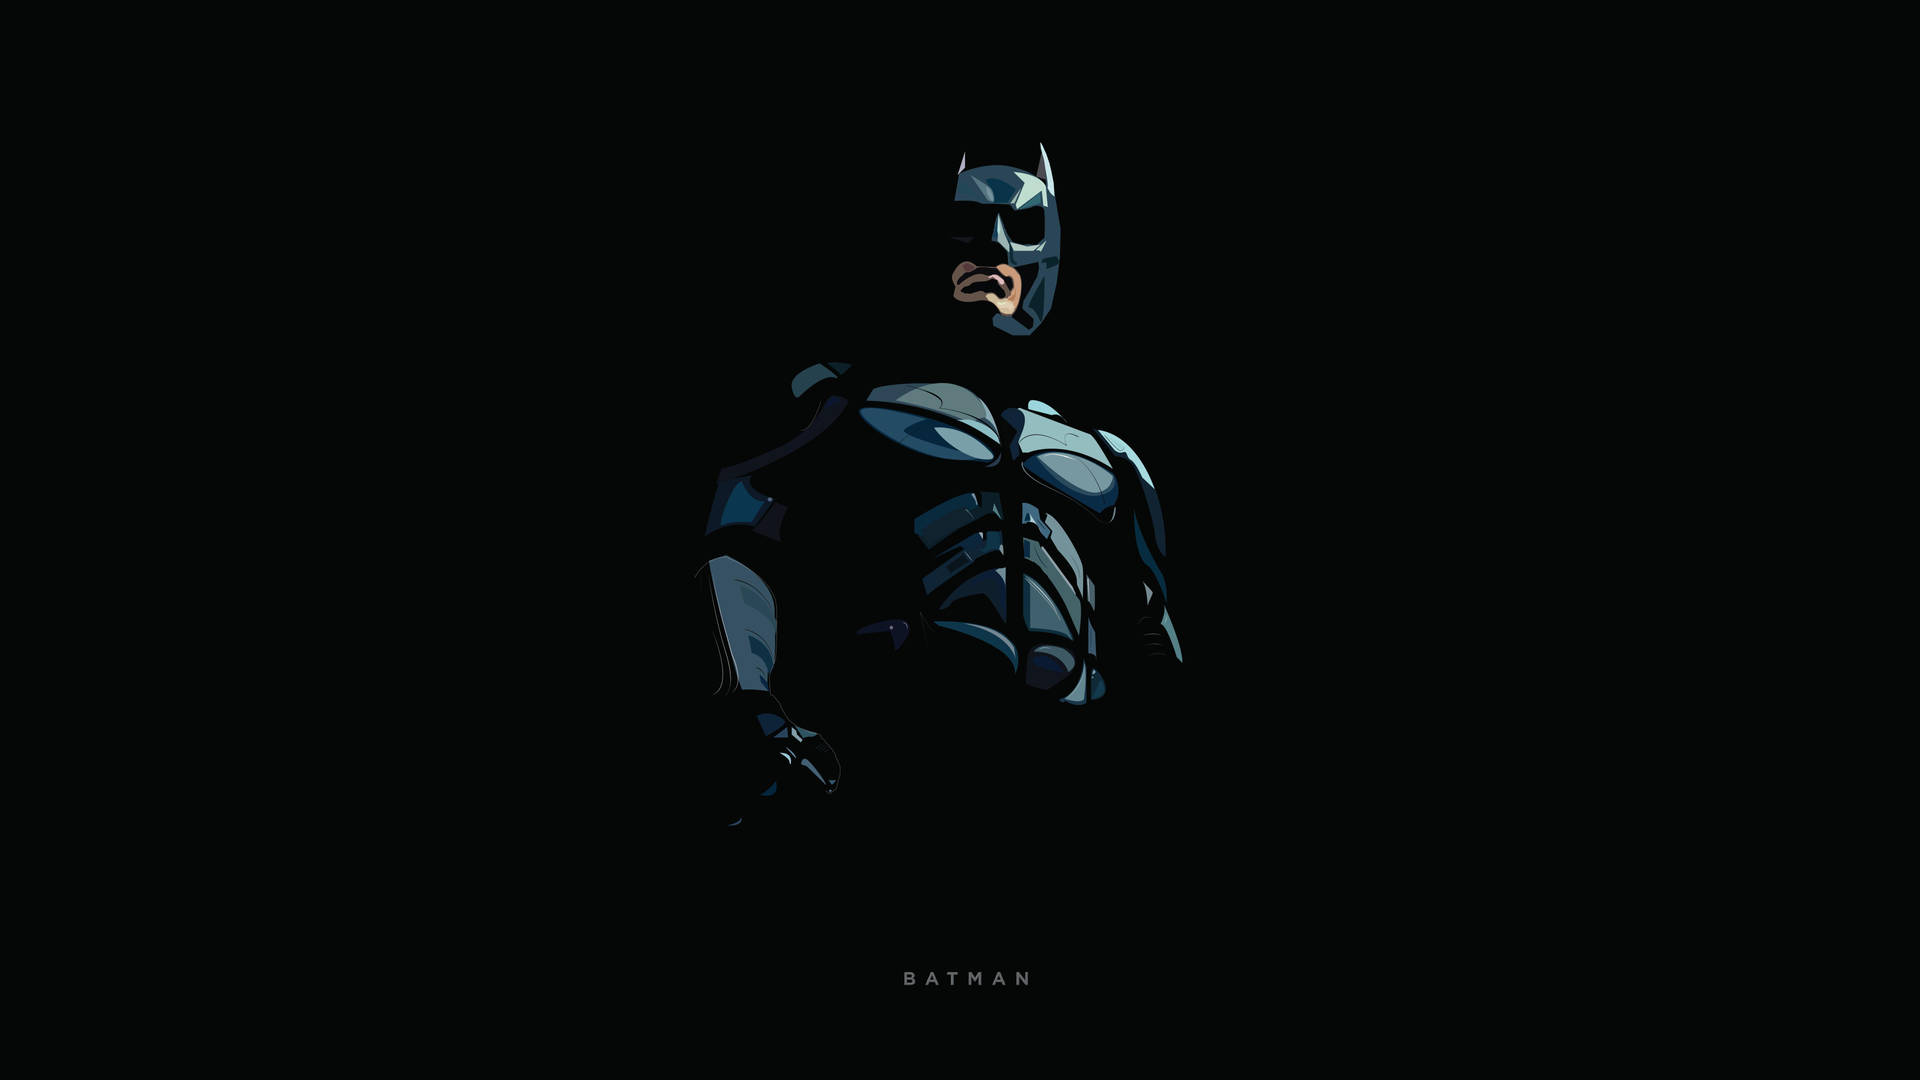 Download Batman Artistic Digital Portrait 4k Wallpaper 